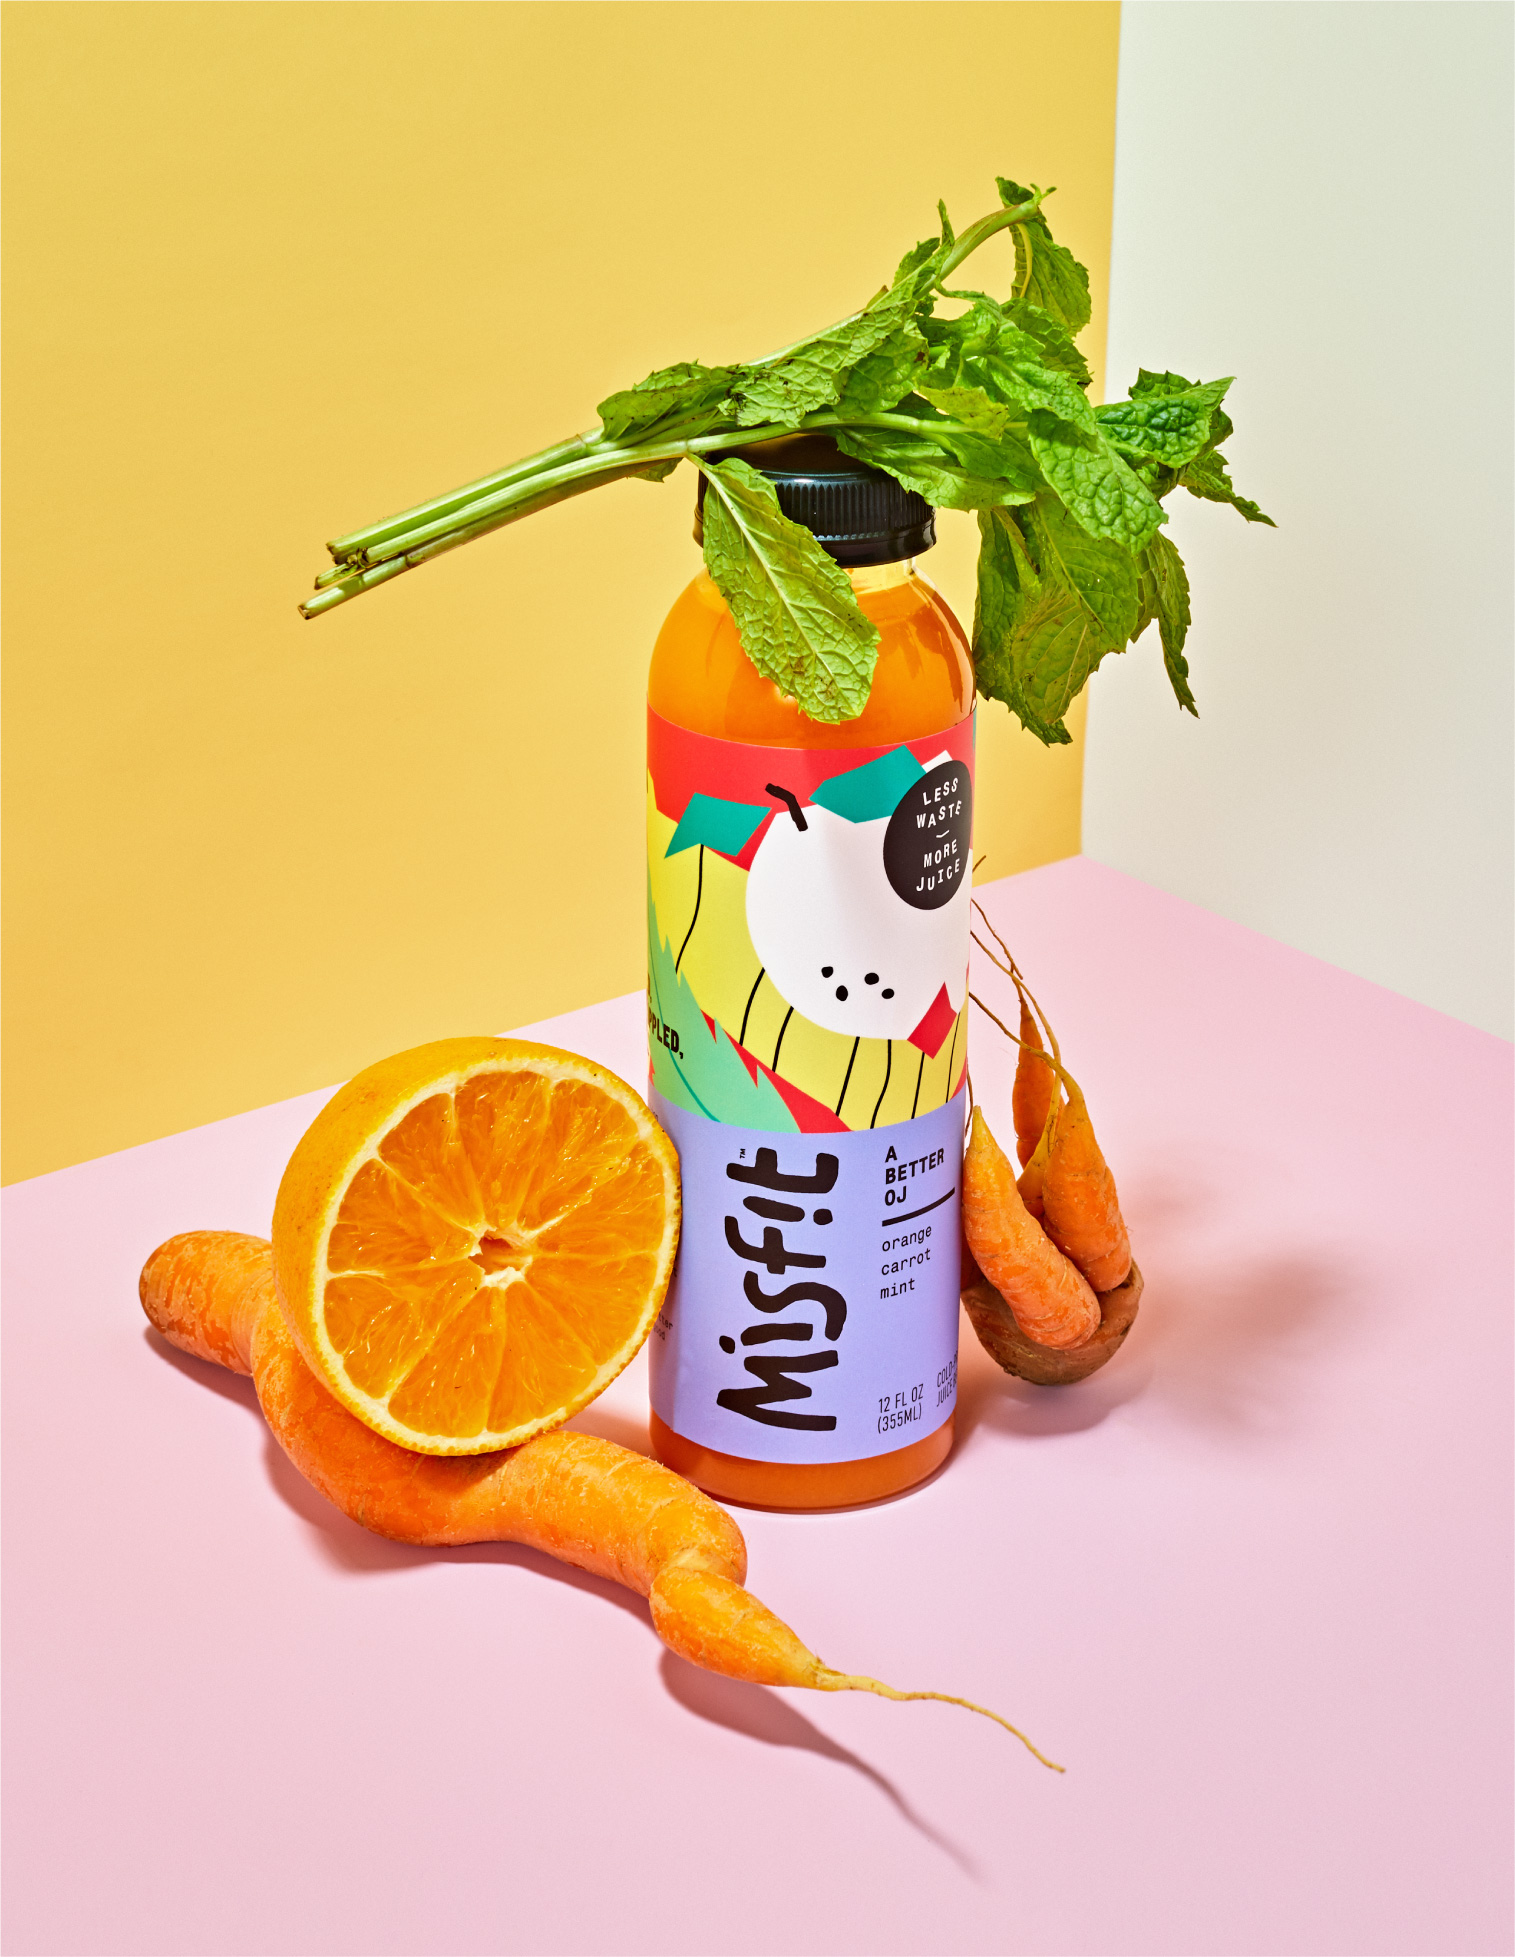 gander-misfit-juice-with-produce@2x